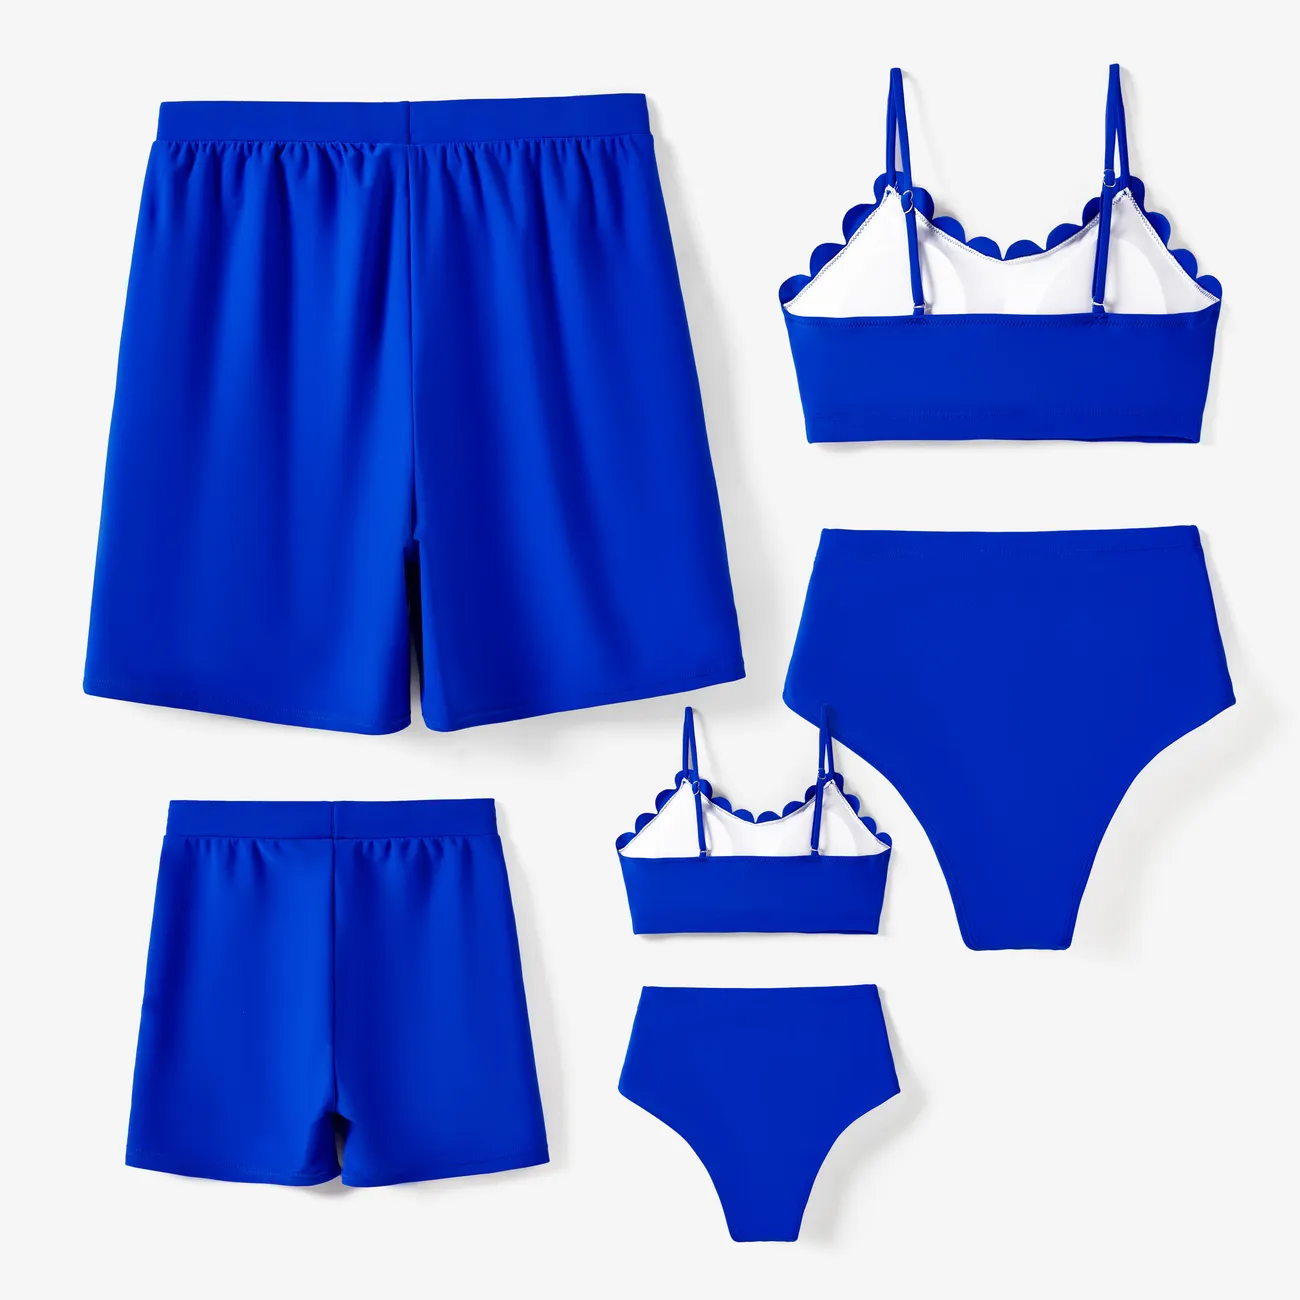 ملابس السباحة إطلالة العائلة للجنسين لون سادة أزرق big image 1